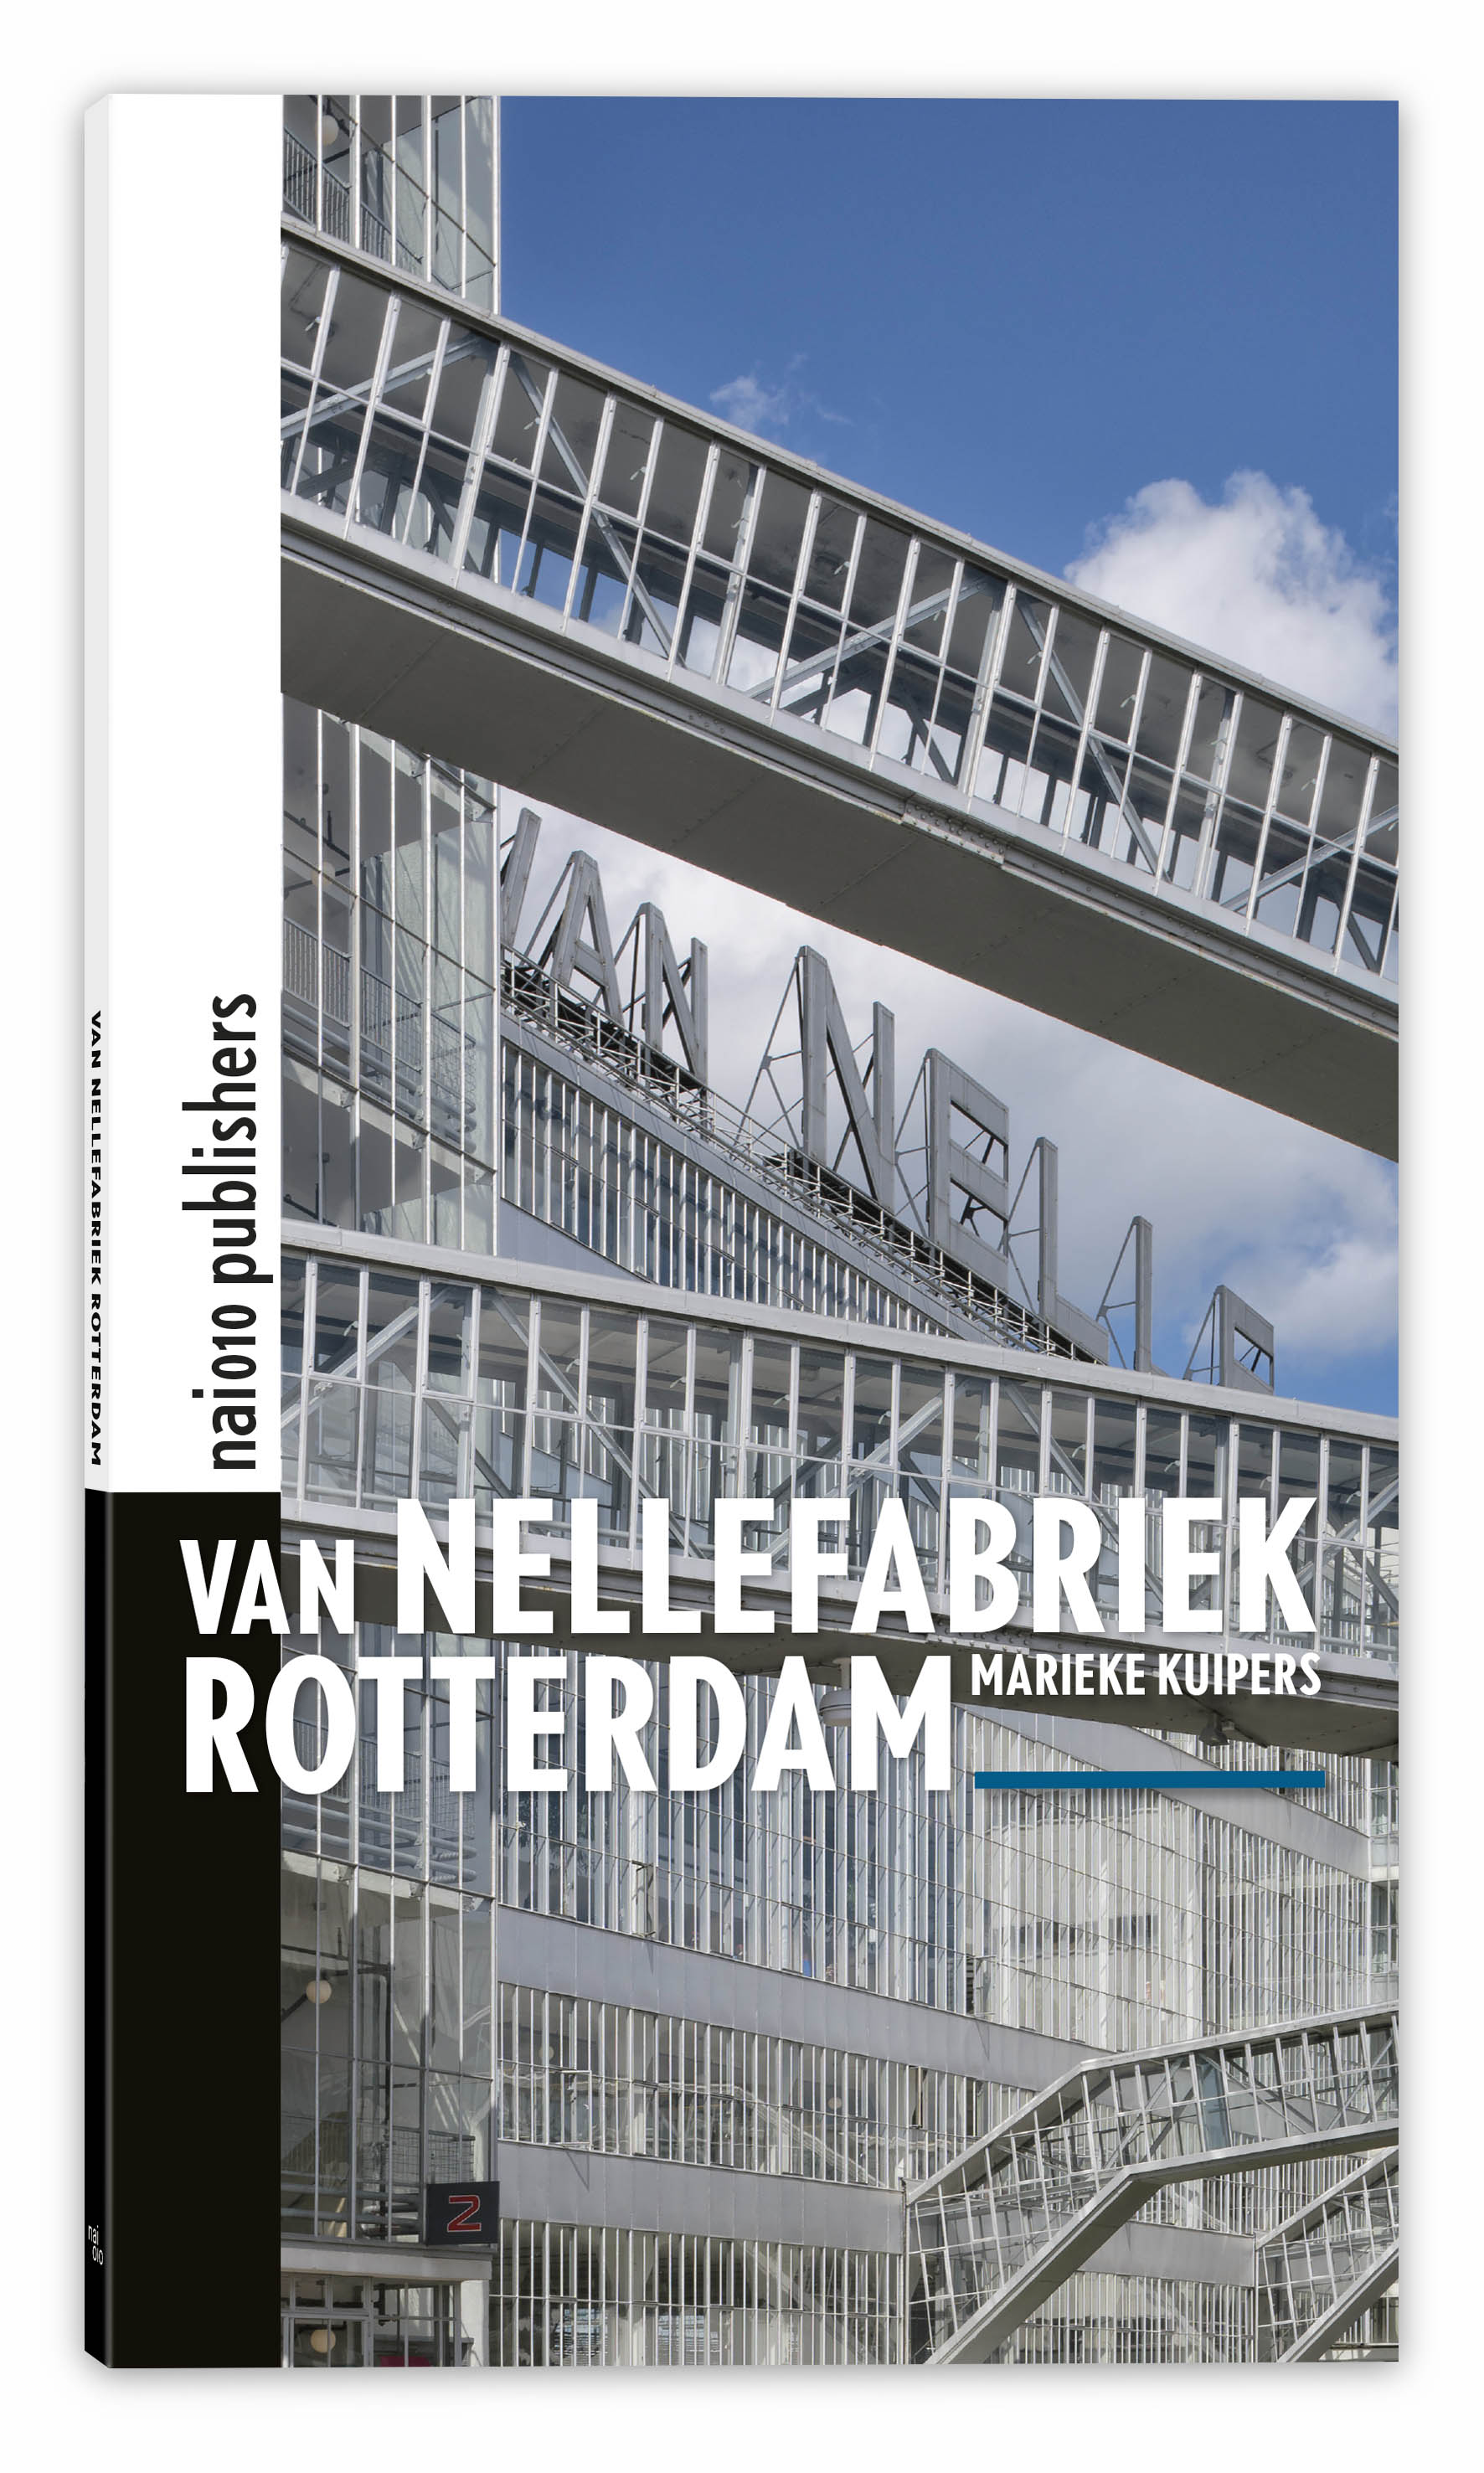 Van Nellefabriek Rotterdam